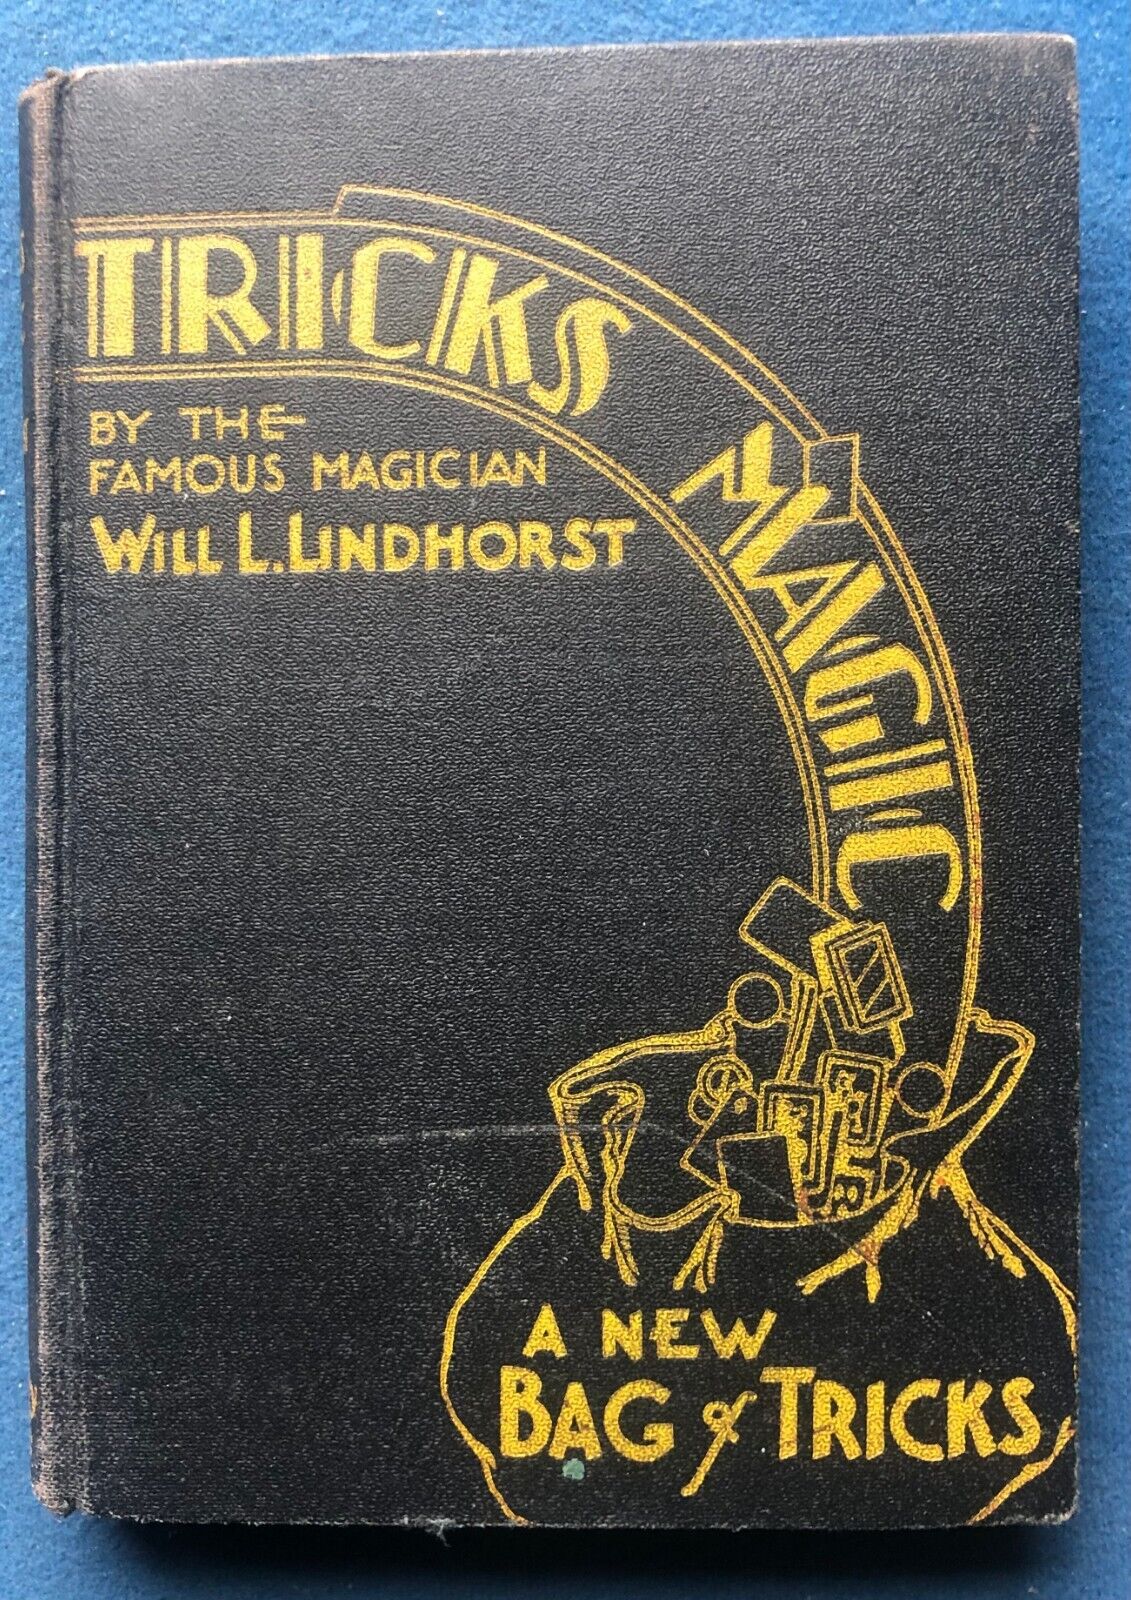 Antique Magic Trick Book Tricks & Magic Will L. Lindhorst 1934 Hardcover